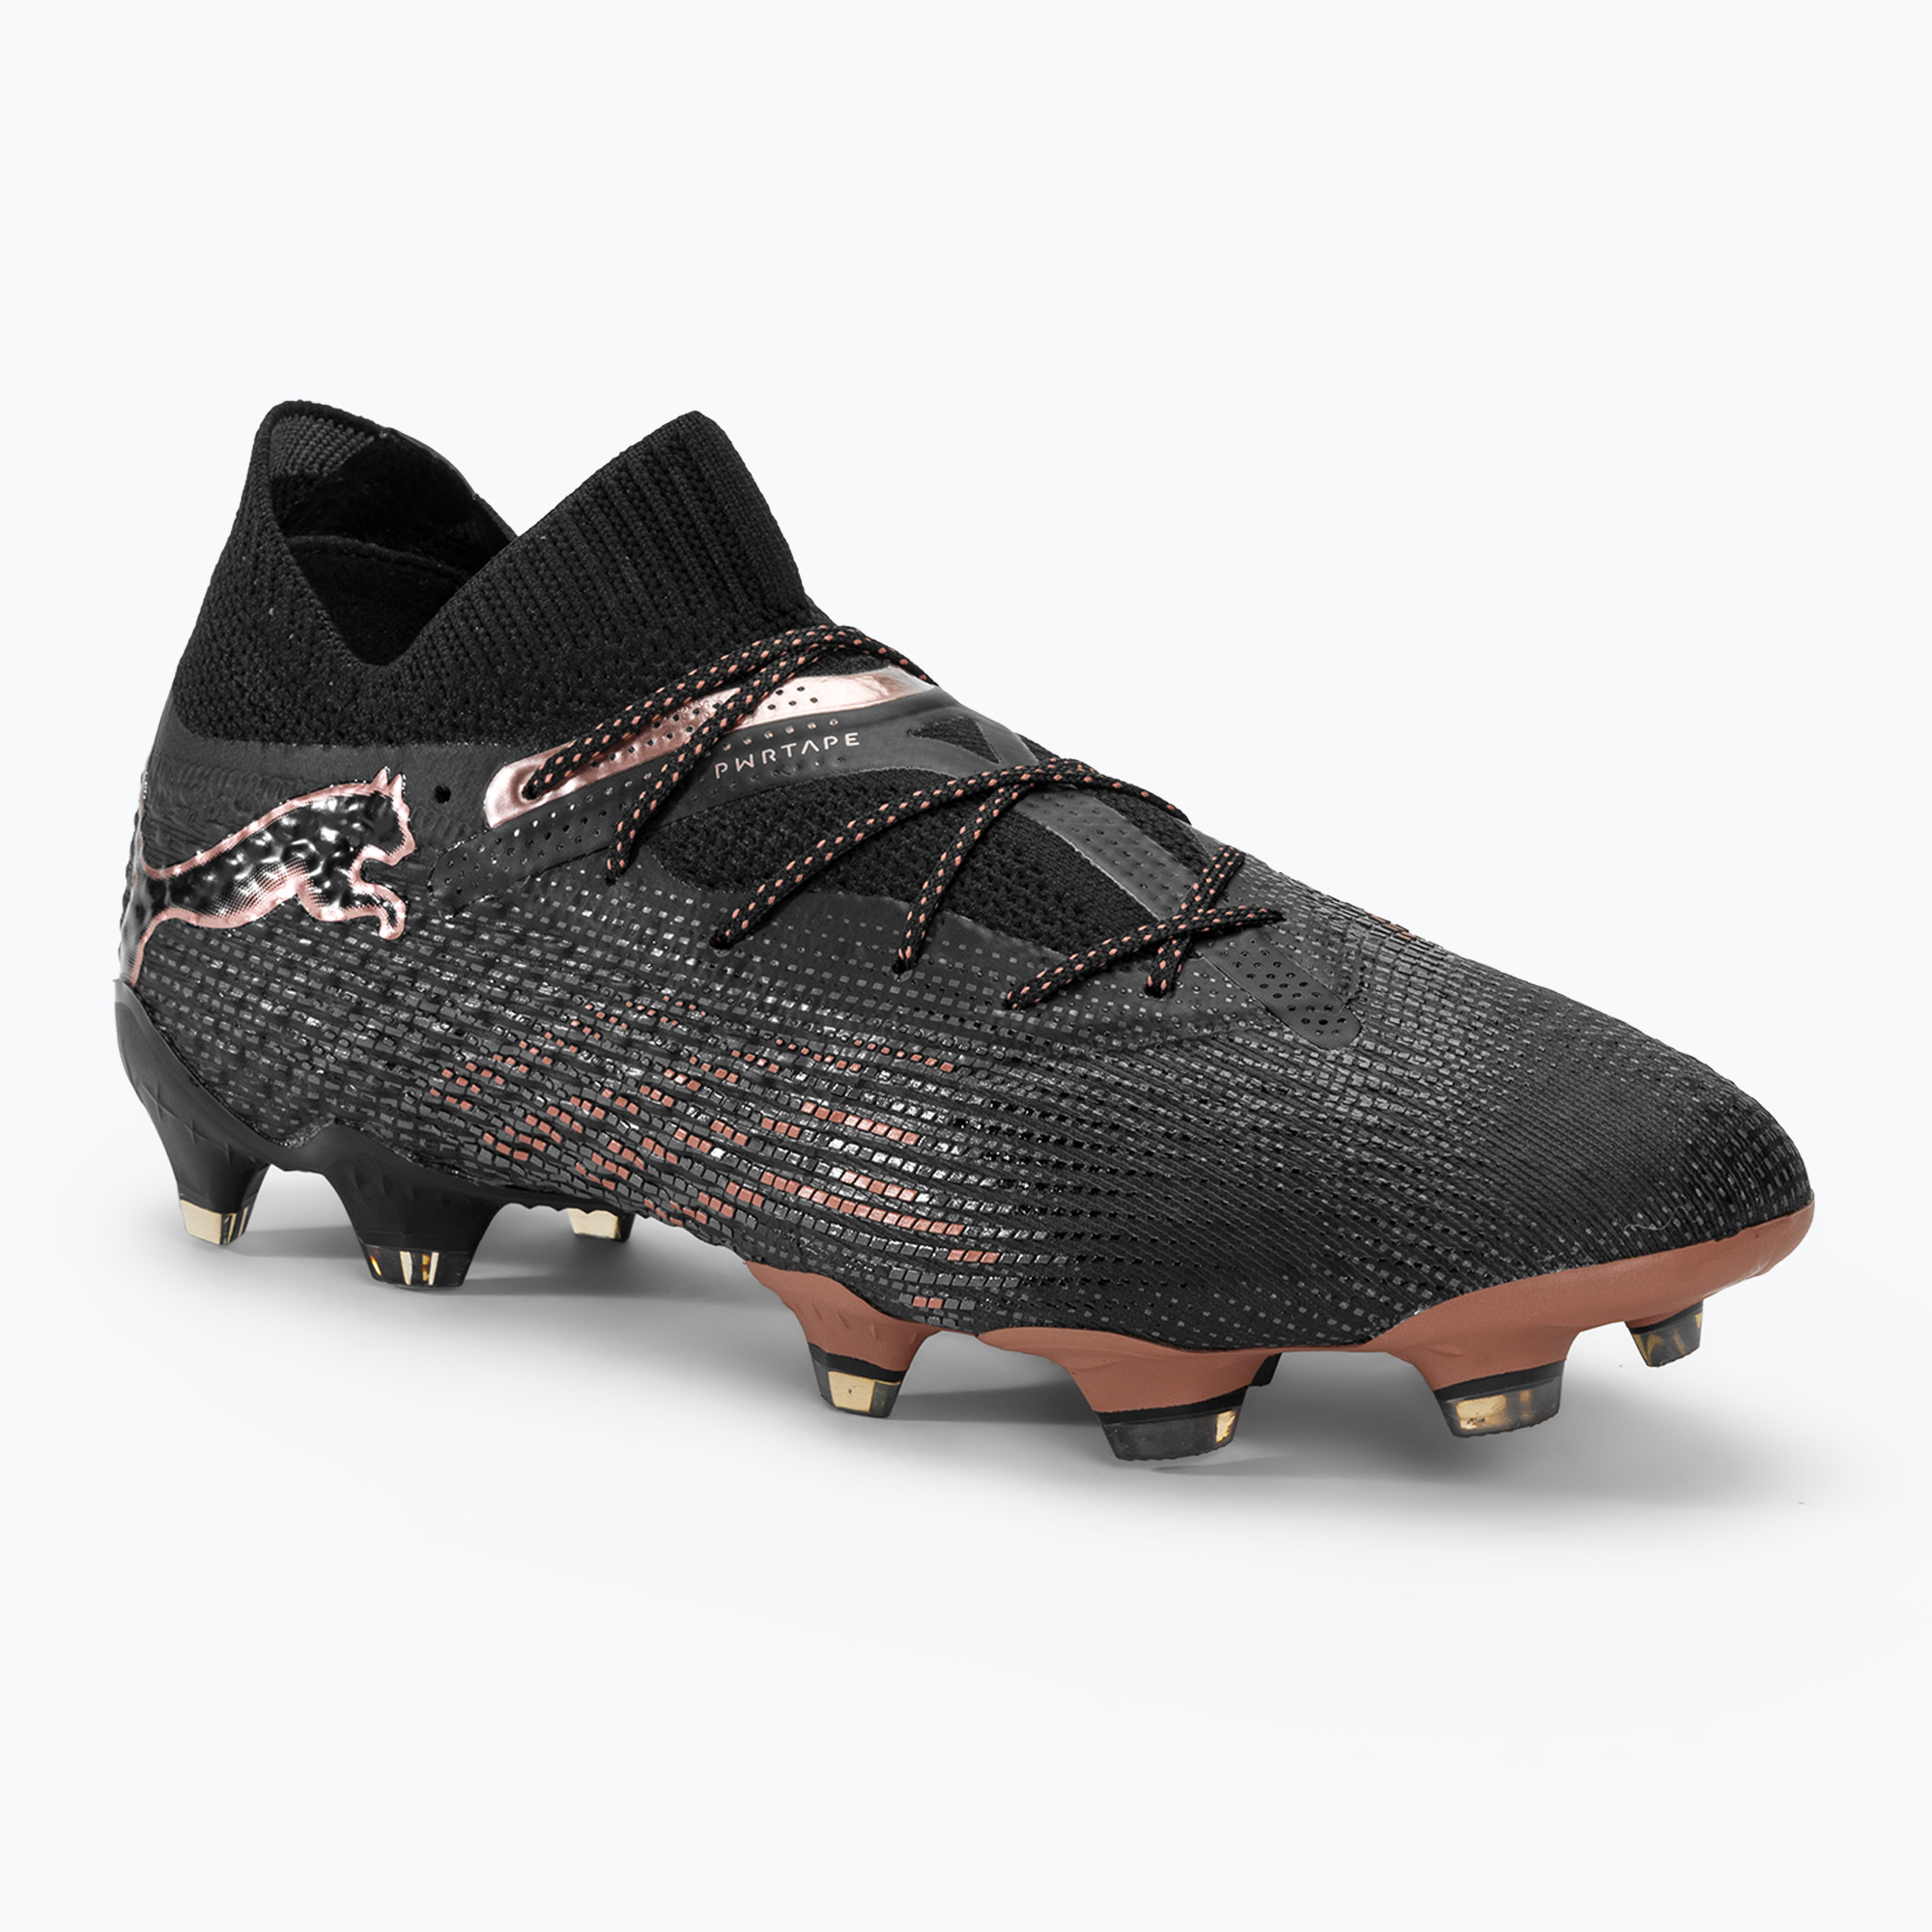 PUMA Future 7 Ultimate FG/AG футболни обувки puma black/copper rose